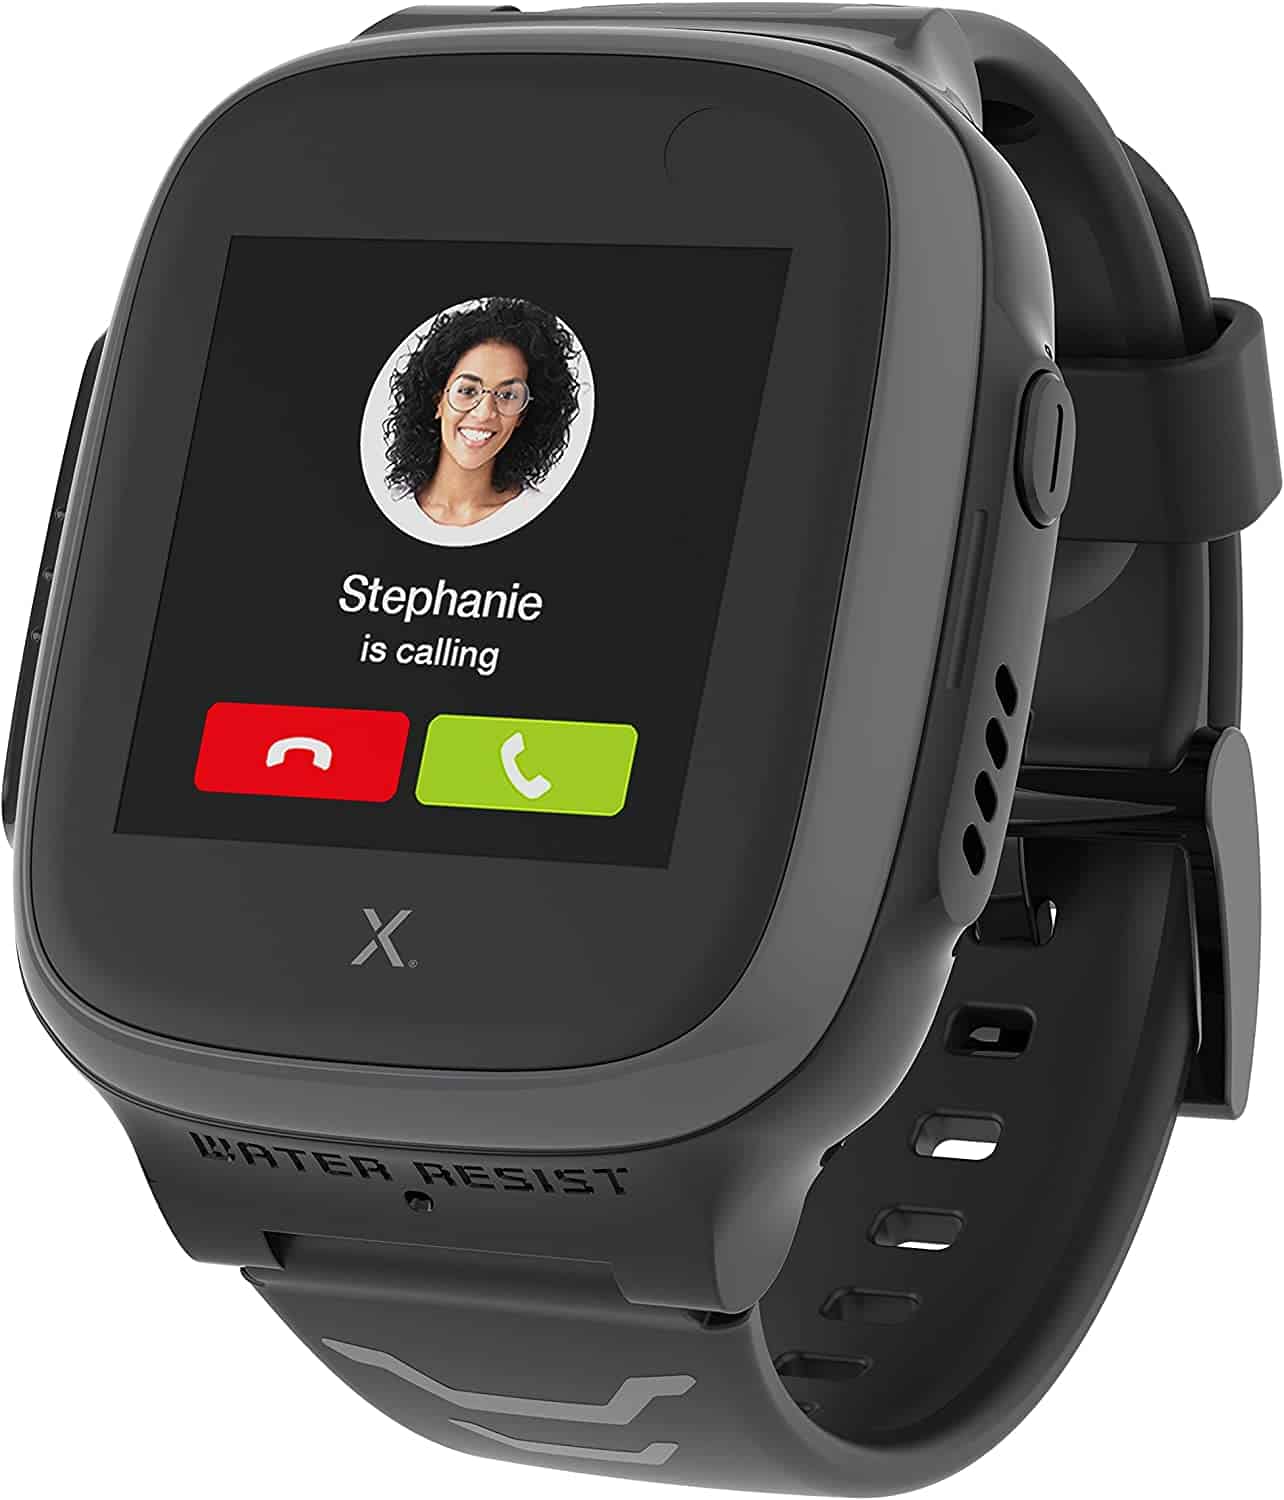 Beste kinder smartwatch met GPS- Xplora X5 Play